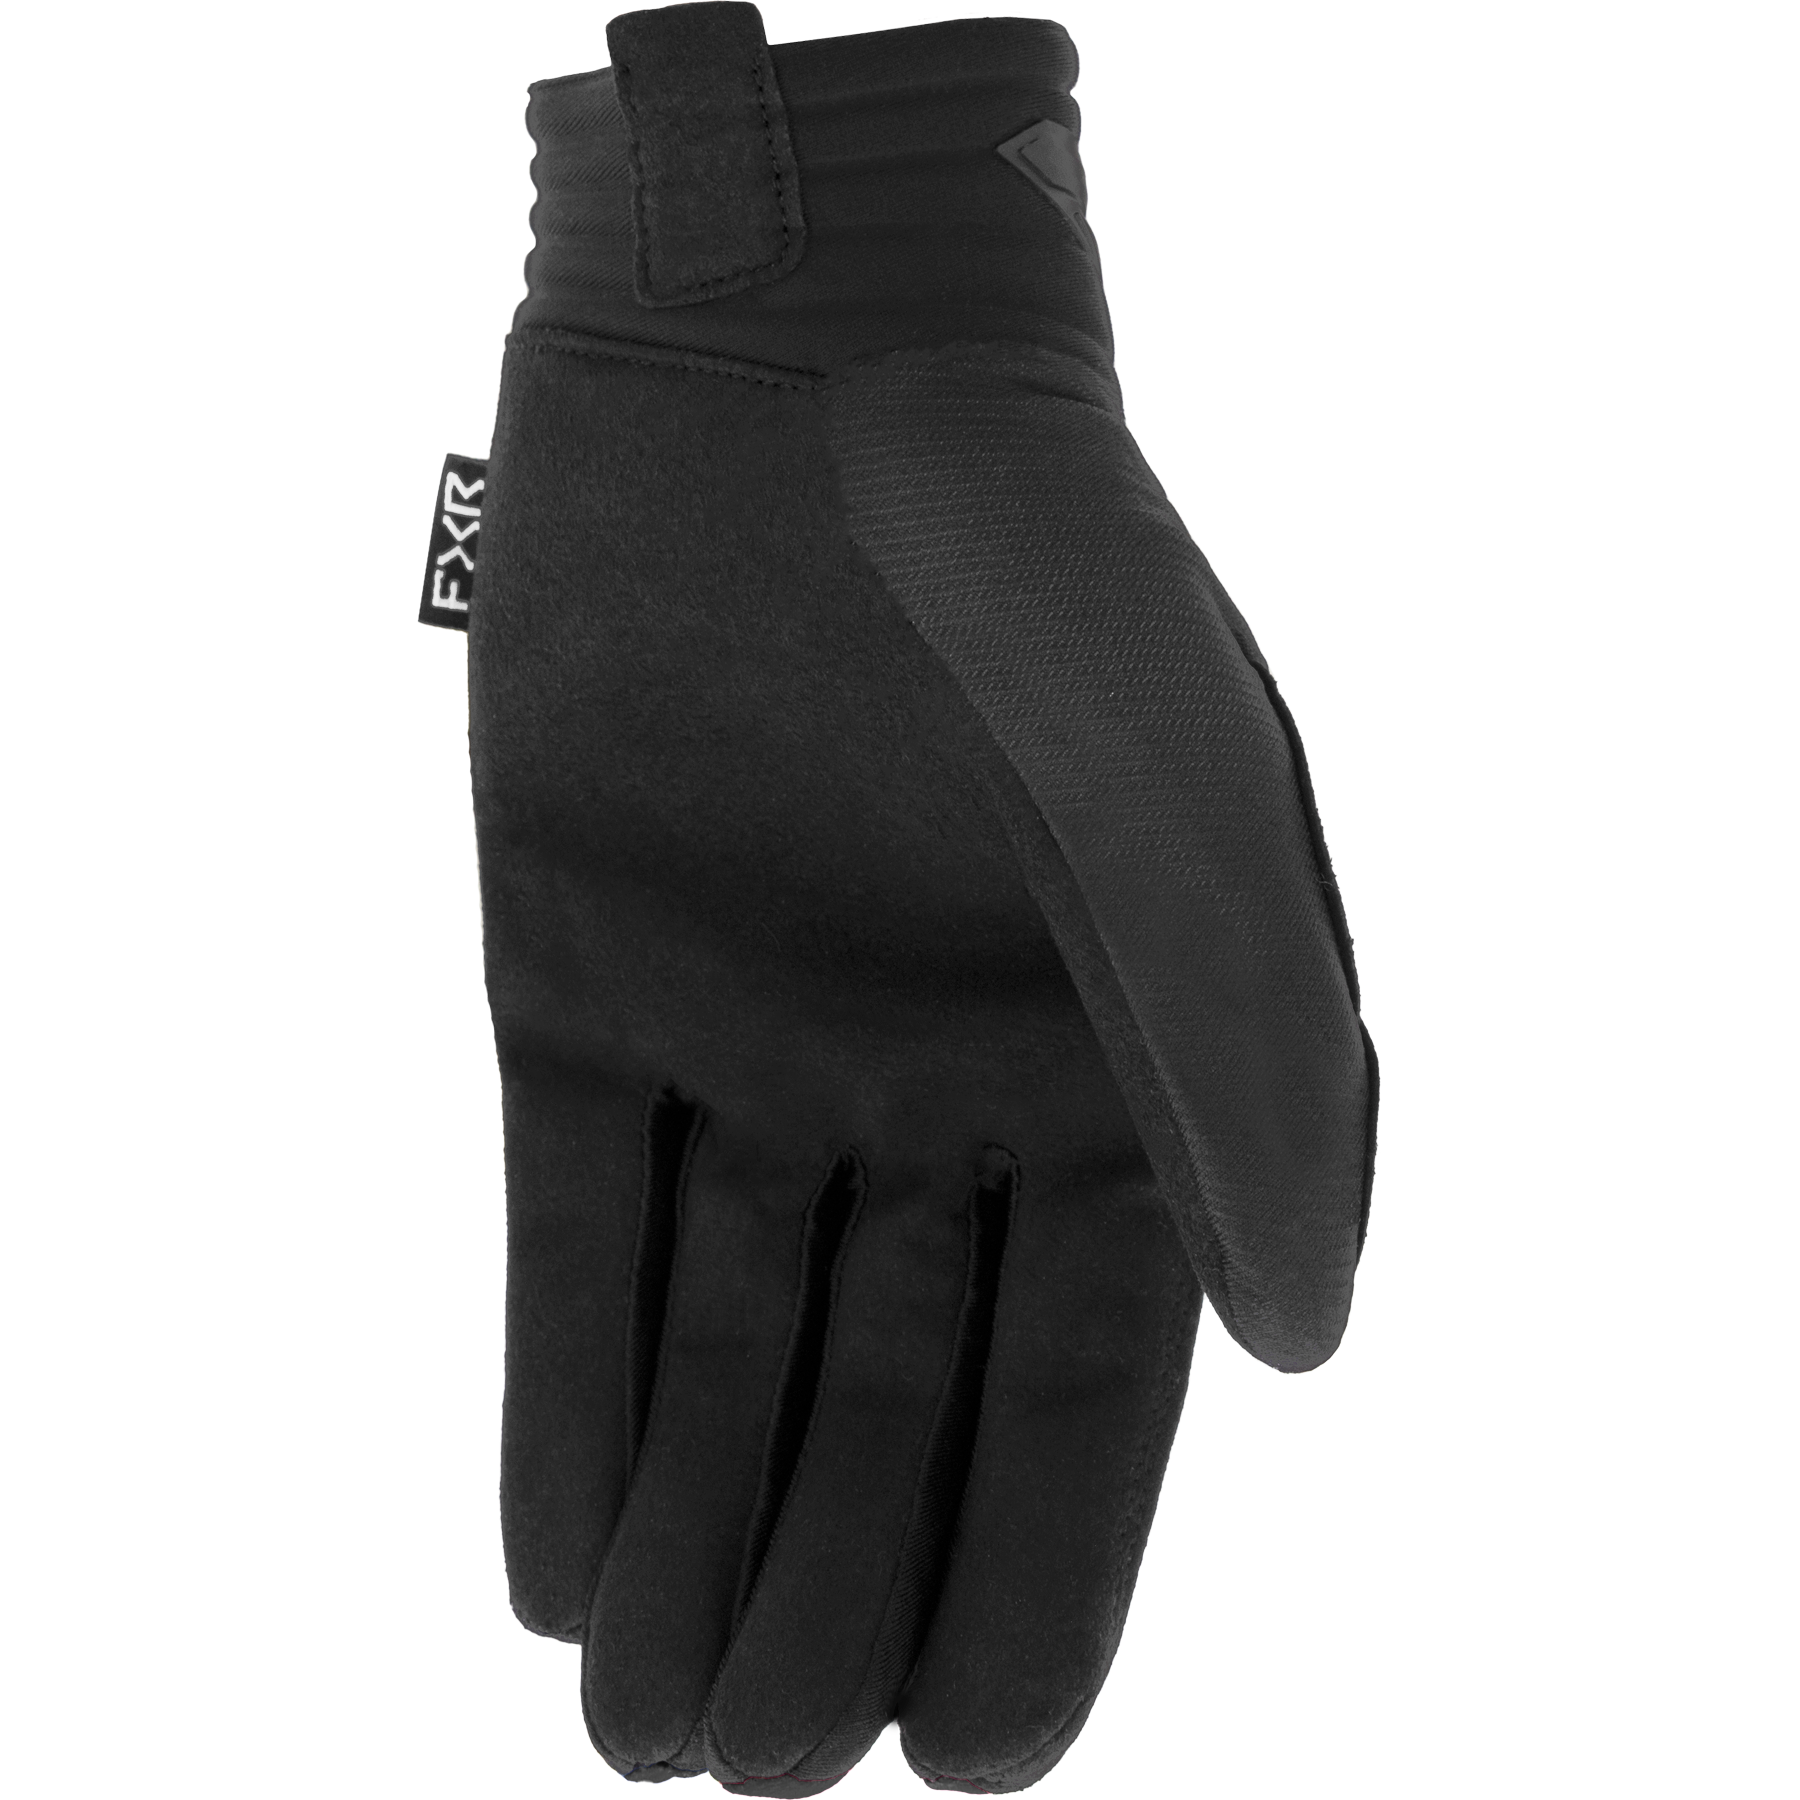 FXR Prime MX Glove Black/Hi-Vis